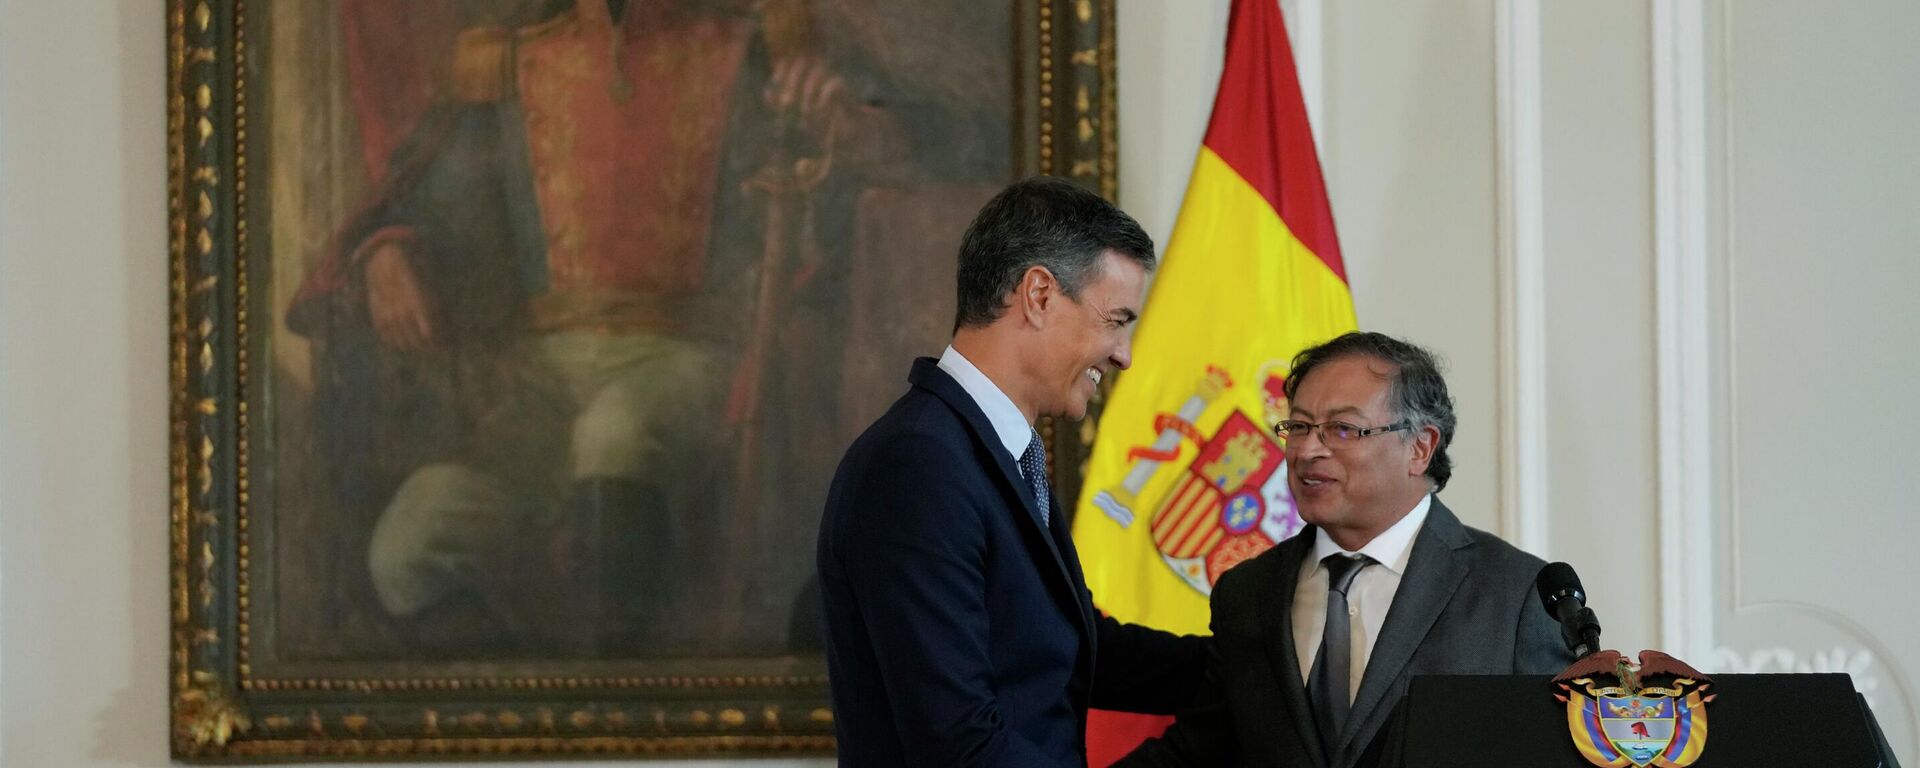 El presidente del Gobierno español, Pedro Sánchez, estrecha la mano del presidente colombiano, Gustavo Petro, durante su visita a Colombia - Sputnik Mundo, 1920, 29.08.2022